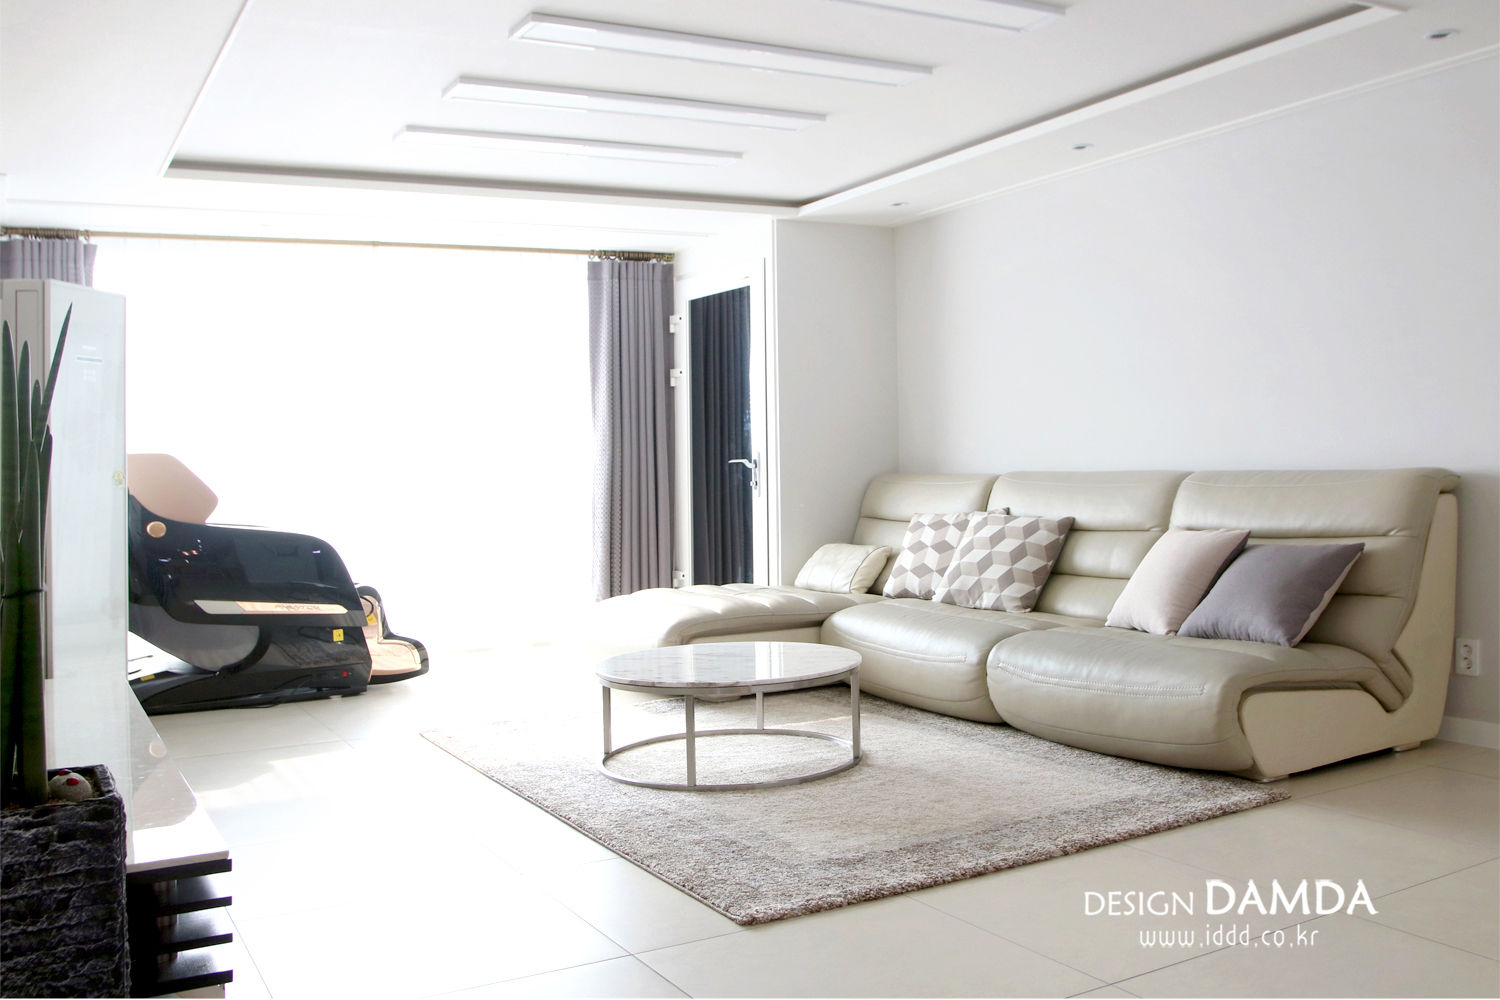 분당구 서현동 시범마을 현대아파트 39평, 디자인담다 디자인담다 Modern living room